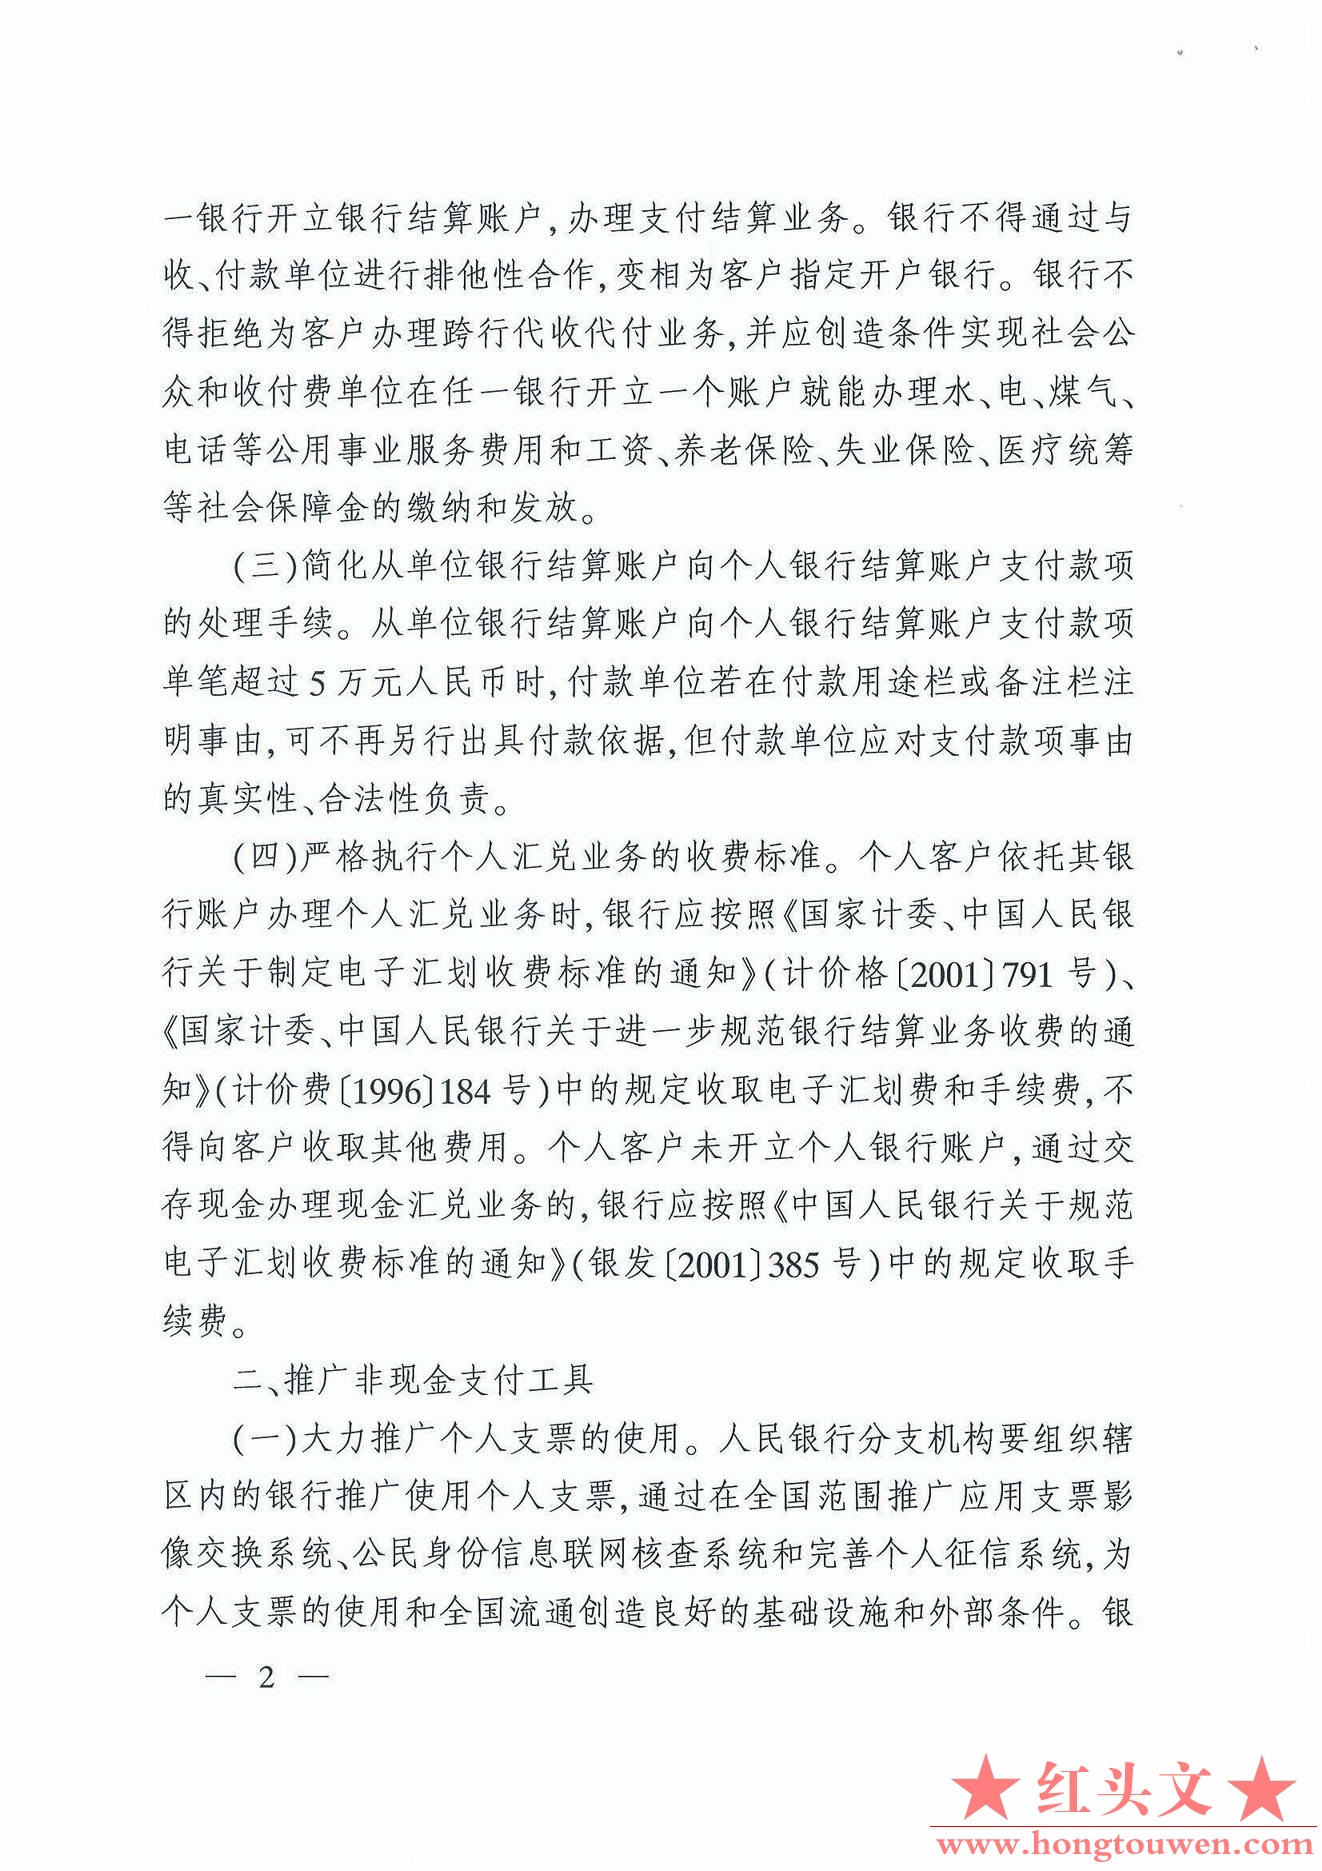 银发[2007]154号-中国人民银行关于改进个人支付结算服务的通知_页面_2.jpg.jpg